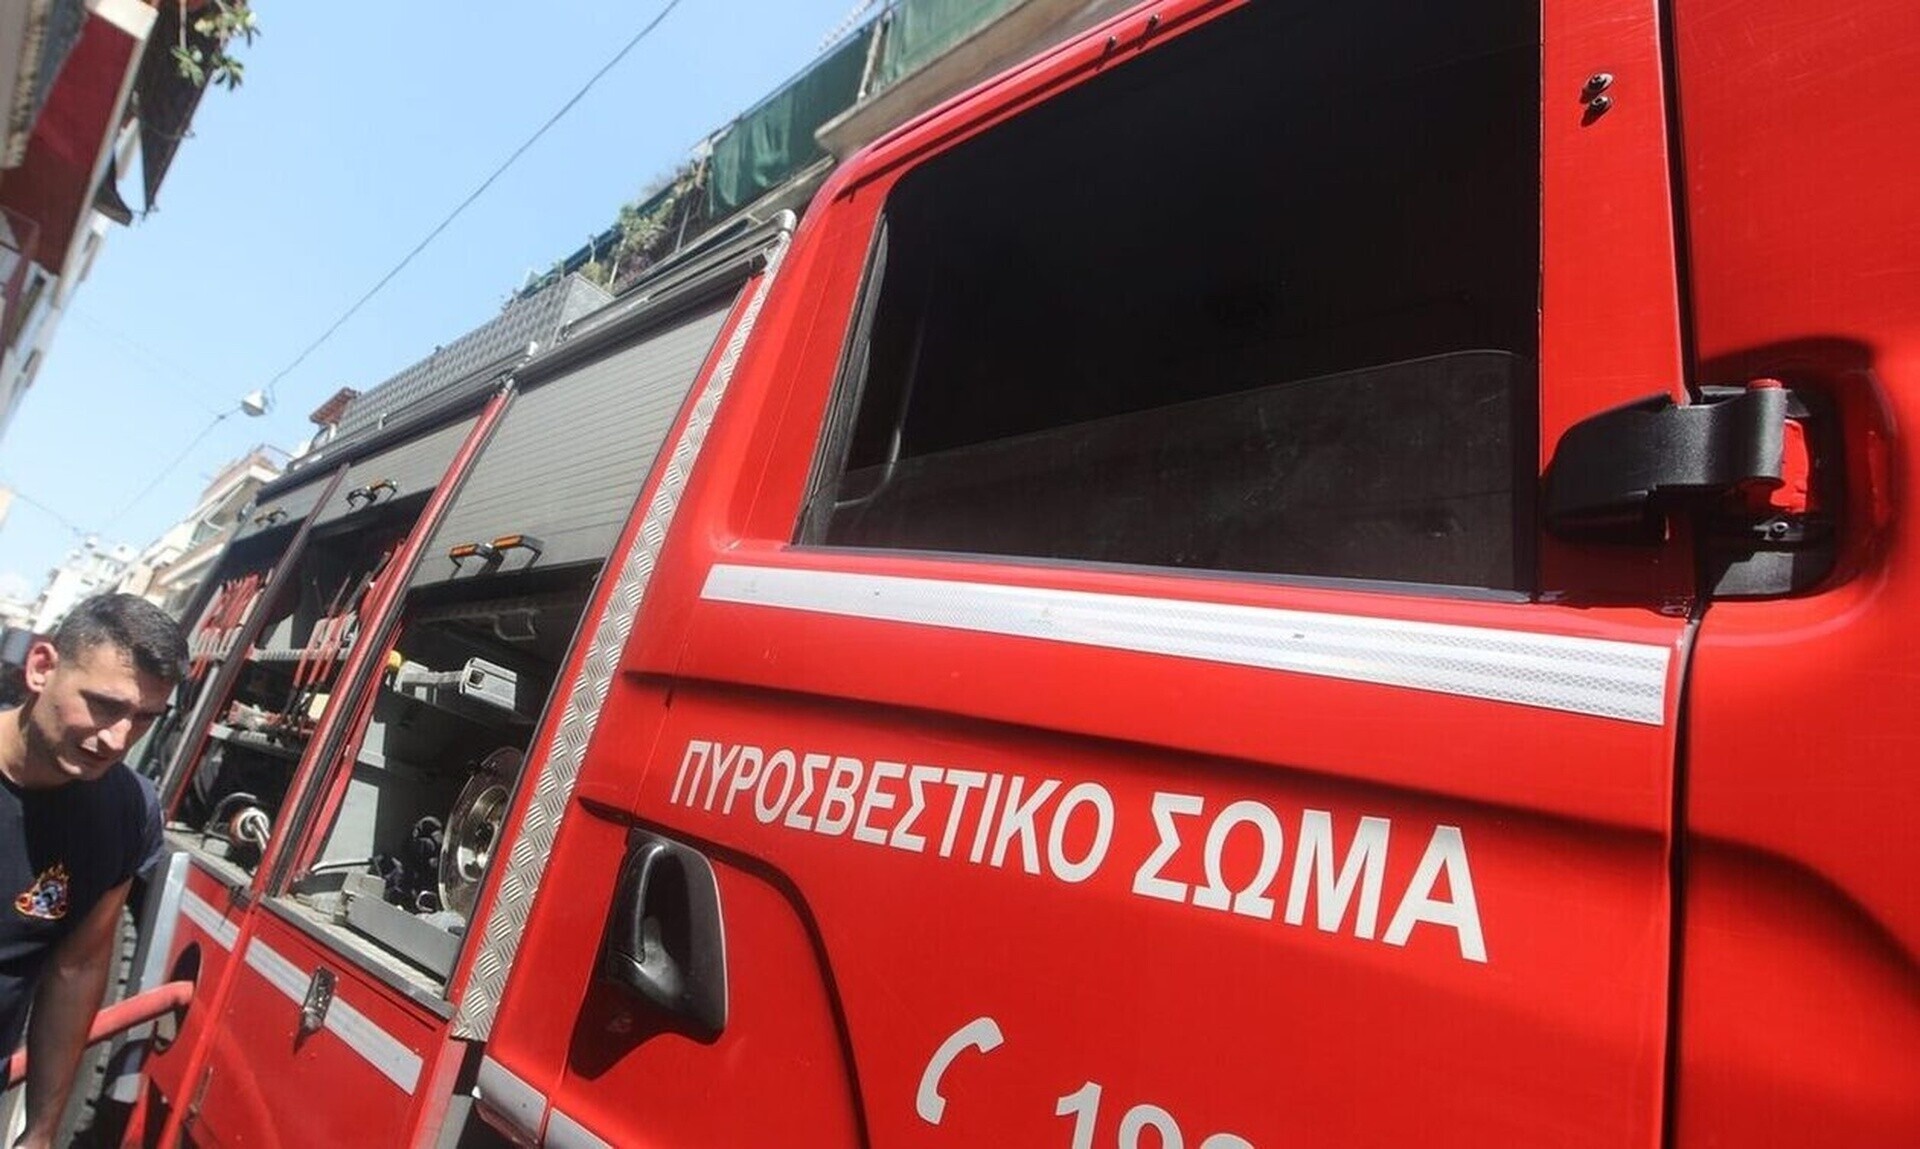 Κορωπί: «Έπεσε κροτίδα στον Προαστιακό» λένε κάτοικοι - Συναγερμός στην Πυροσβεστική